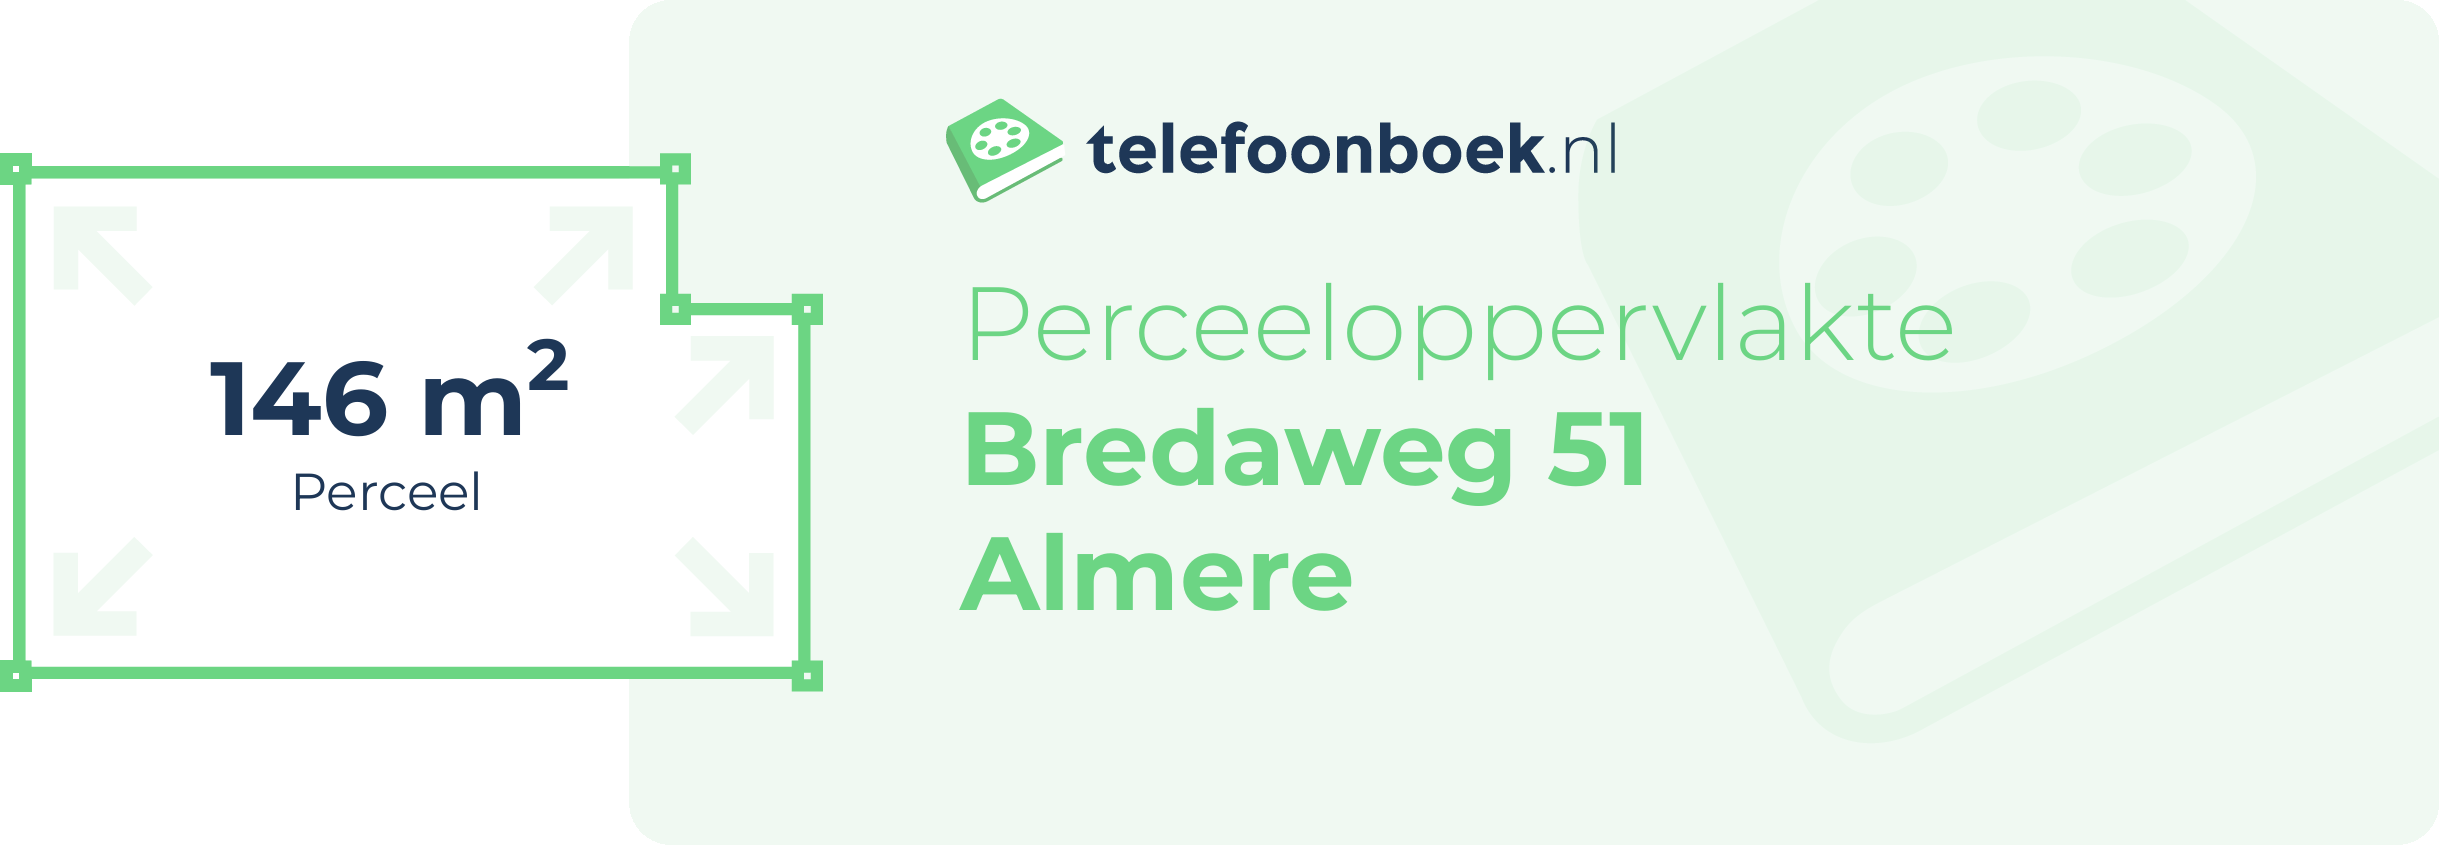 Perceeloppervlakte Bredaweg 51 Almere